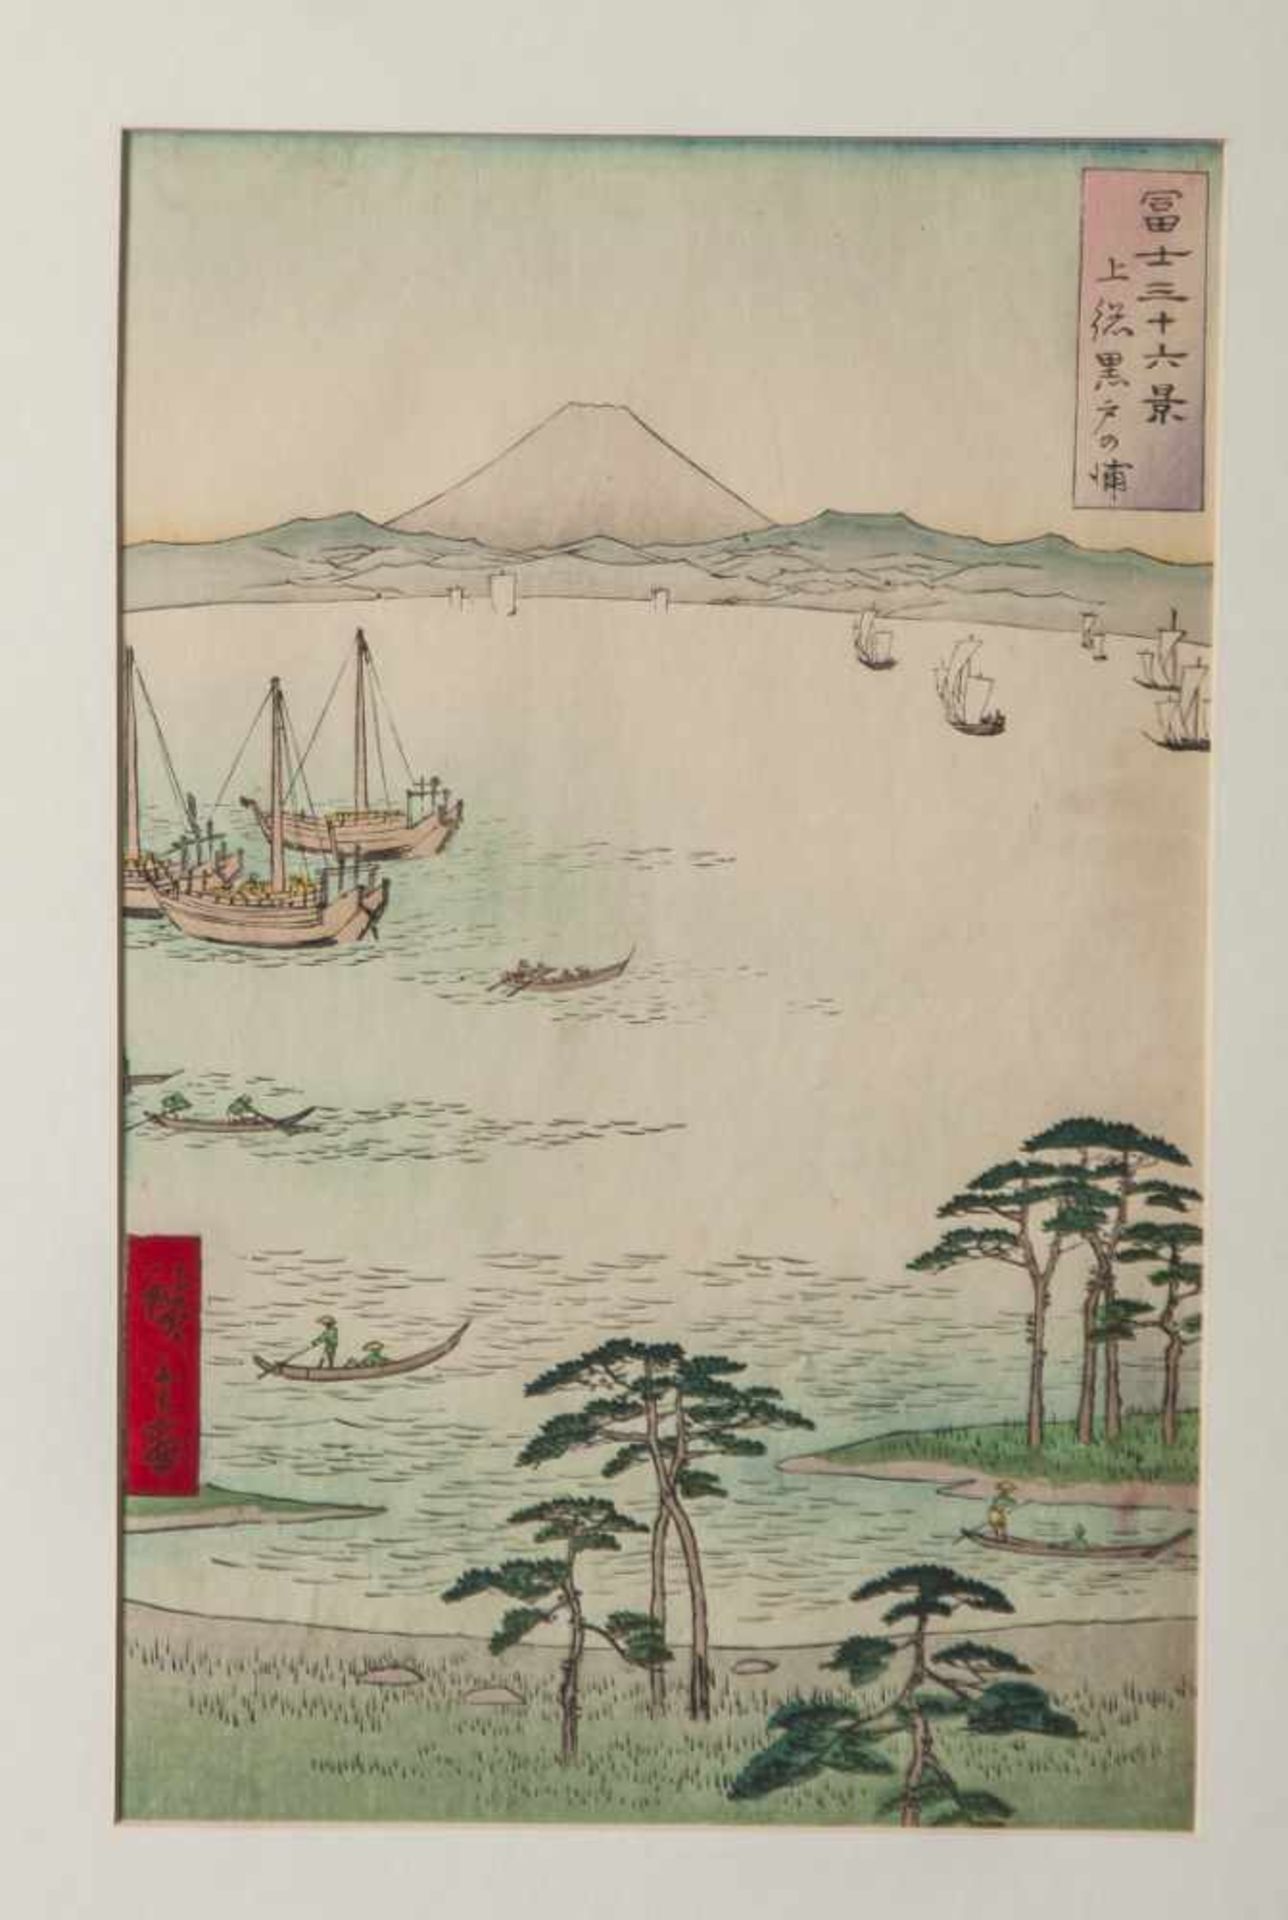 Hiroshige, Utagawa (1797-1858), Kazusa, Kuroto-no ura, aus der Serie: Fuji sanjurokkei (36 Ansichten